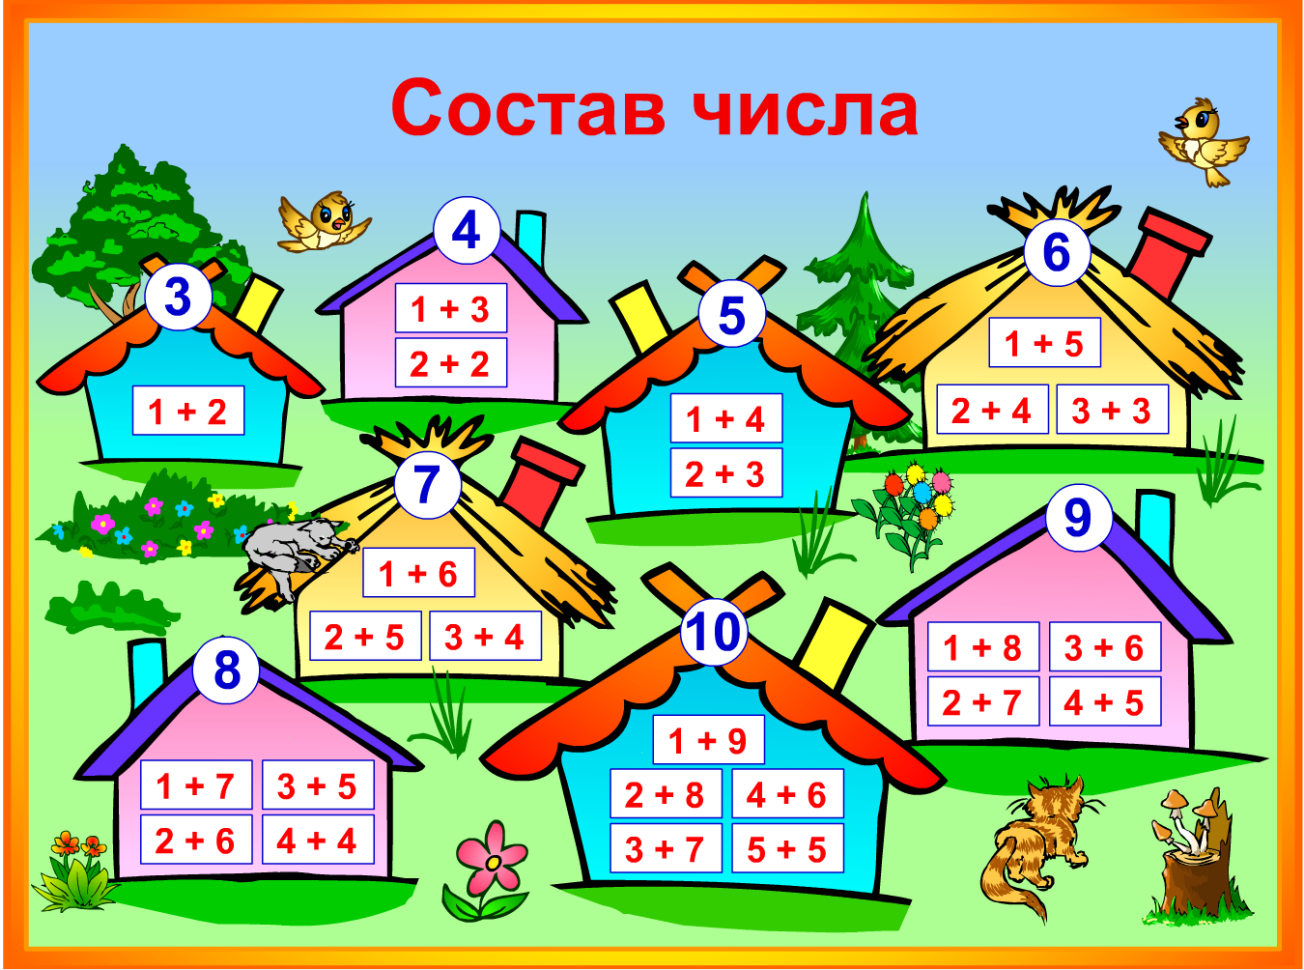 Жил 1 или 2 класса. Игра «числовые домики». Состав числа. Примеры домики. Состав числа домики.